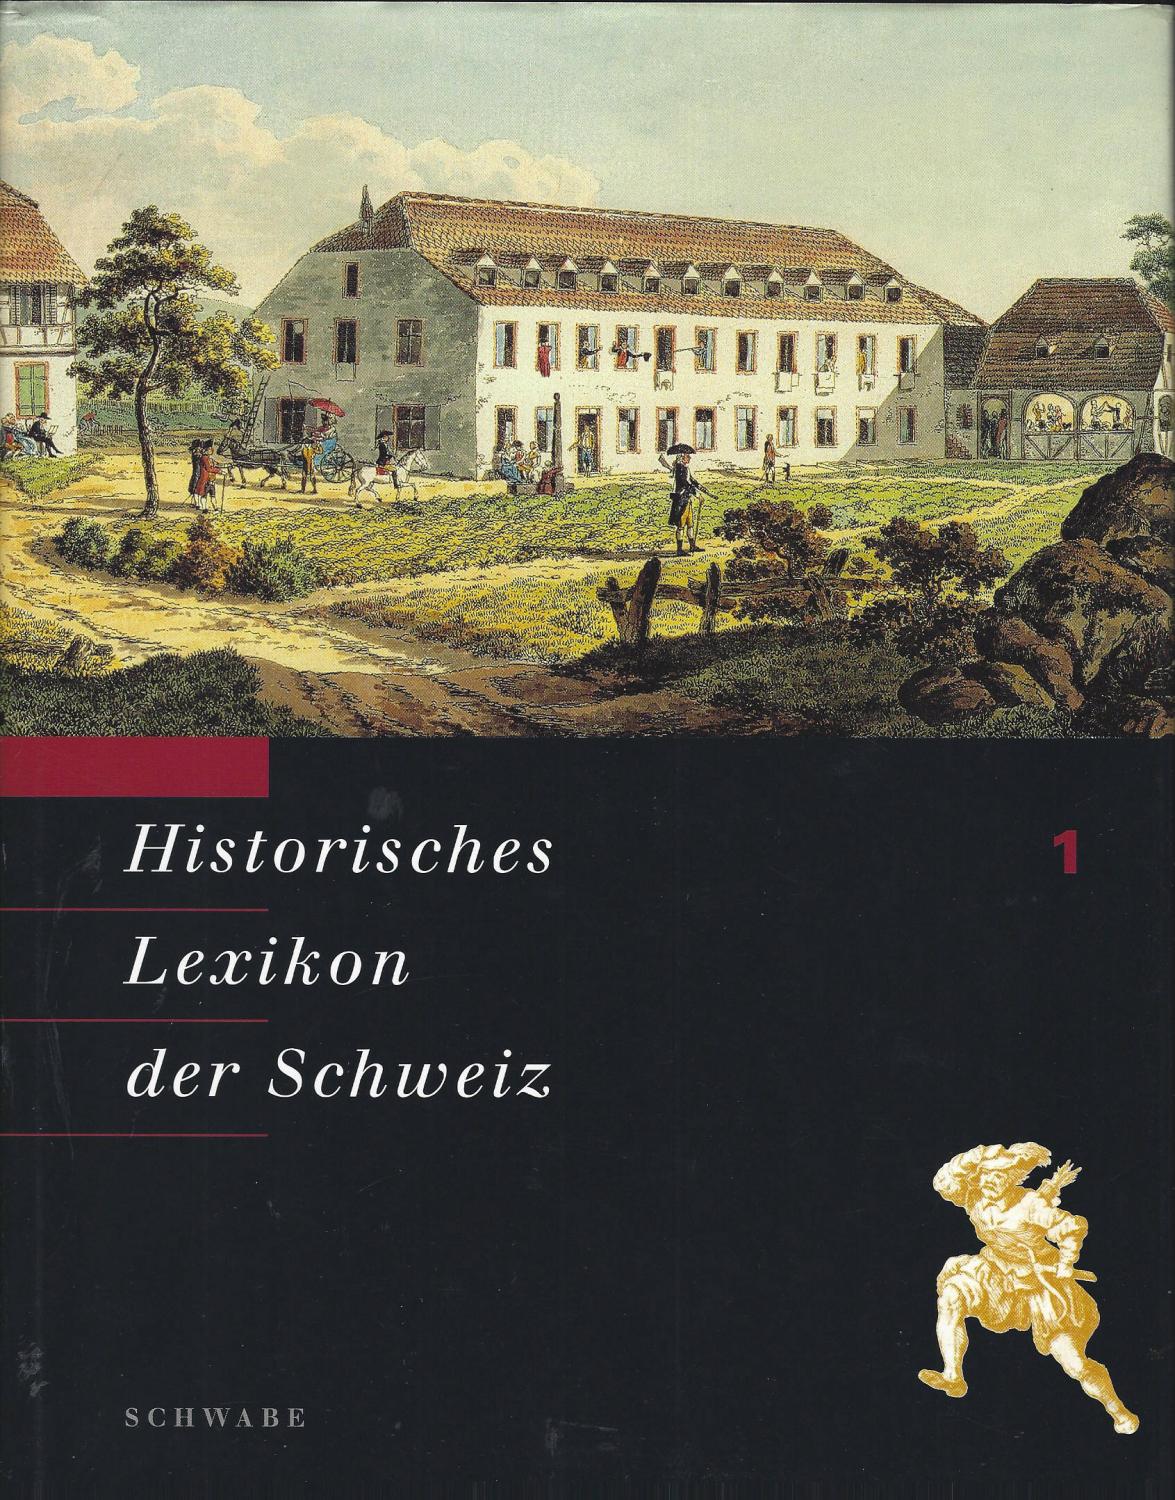 Historisches Lexikon der Schweiz. Herausgegeben von der Stiftung Historisches Lexikon der Schweiz. Band 1. Aa - Basel (Fürstbistum).